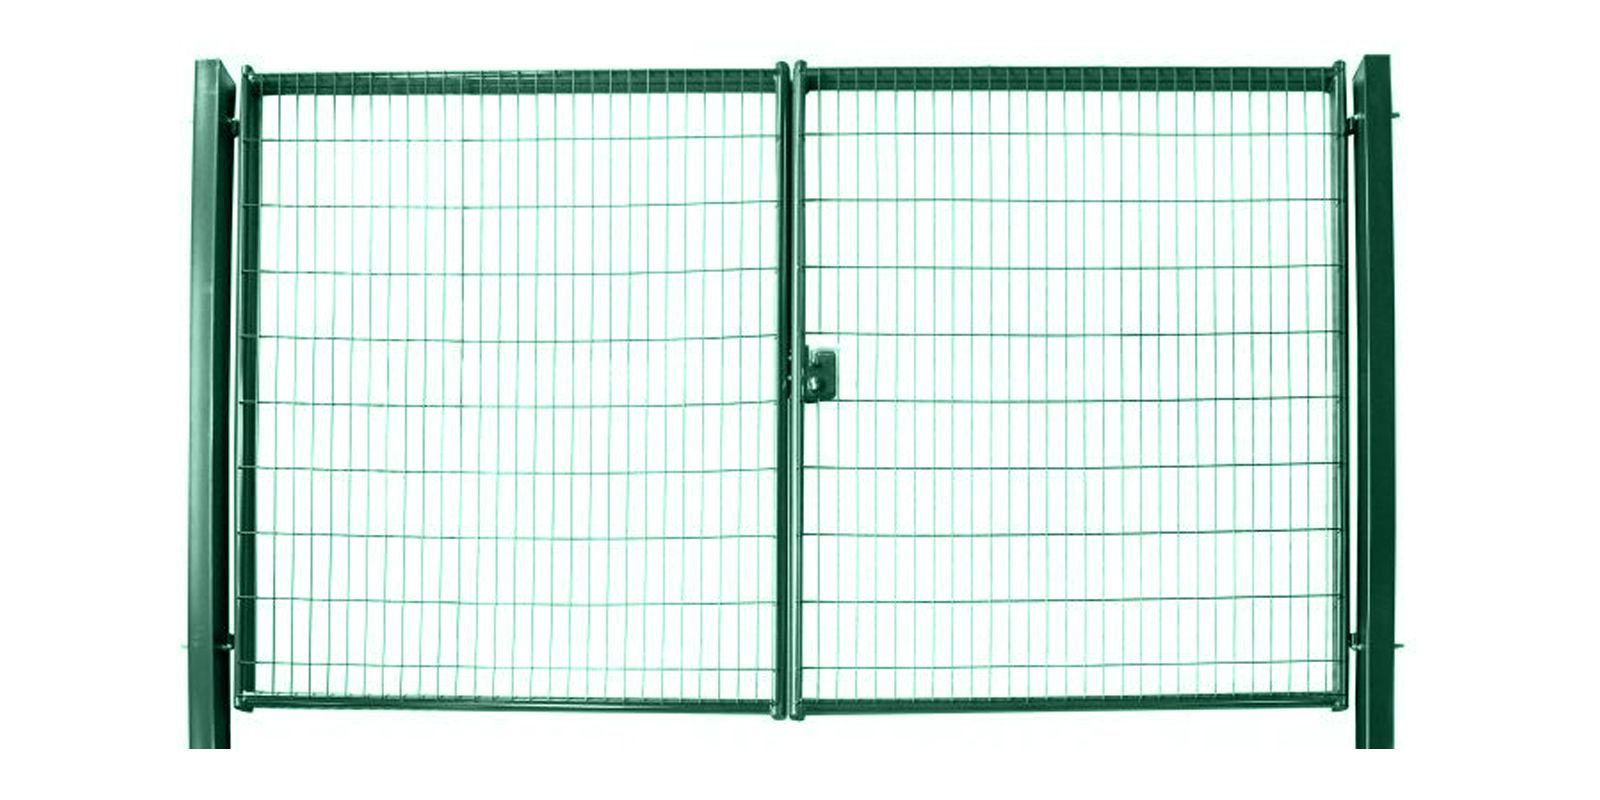 Купить Ворота для панельного ограждения Medium шириной 6,00 м с высотой сетки 1,53 м в цвете RAL 6005